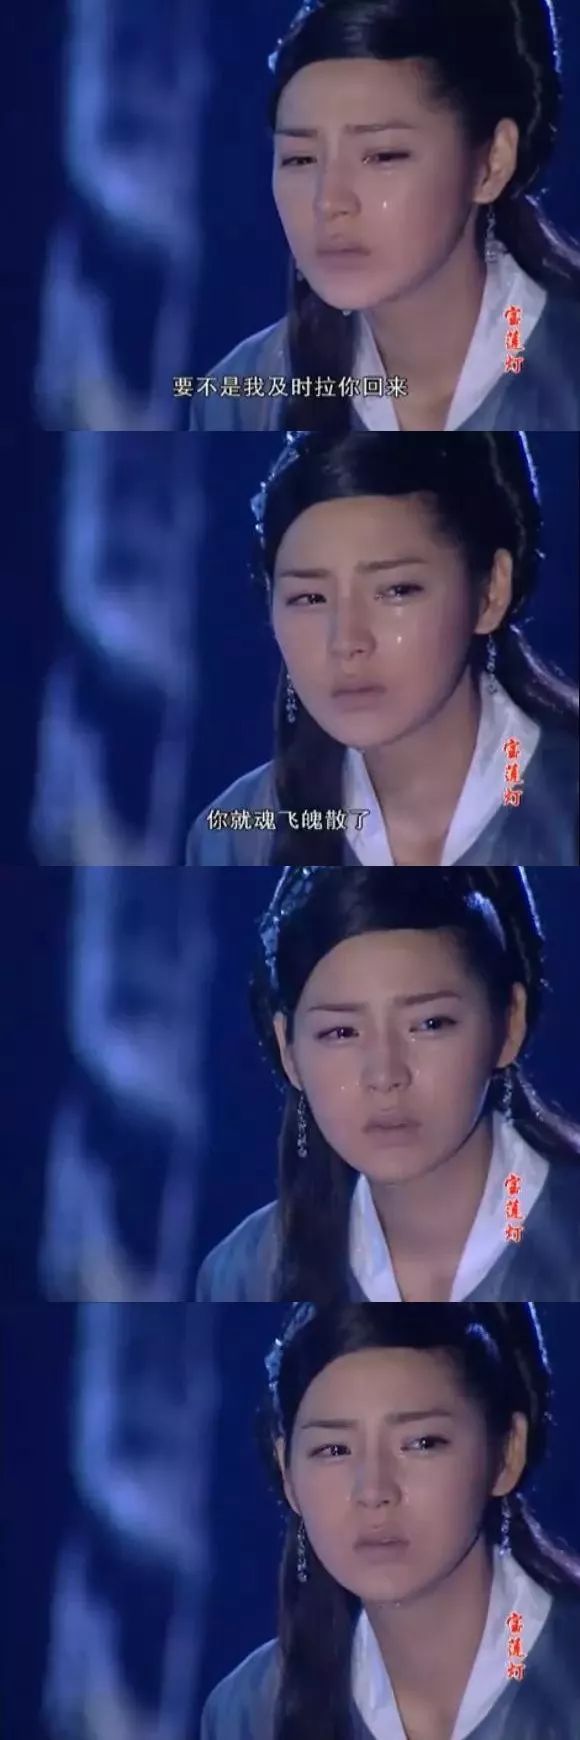 比劉亦菲還早的「神仙姐姐」樸詩妍現在怎麼變成了這樣 娛樂 第25張